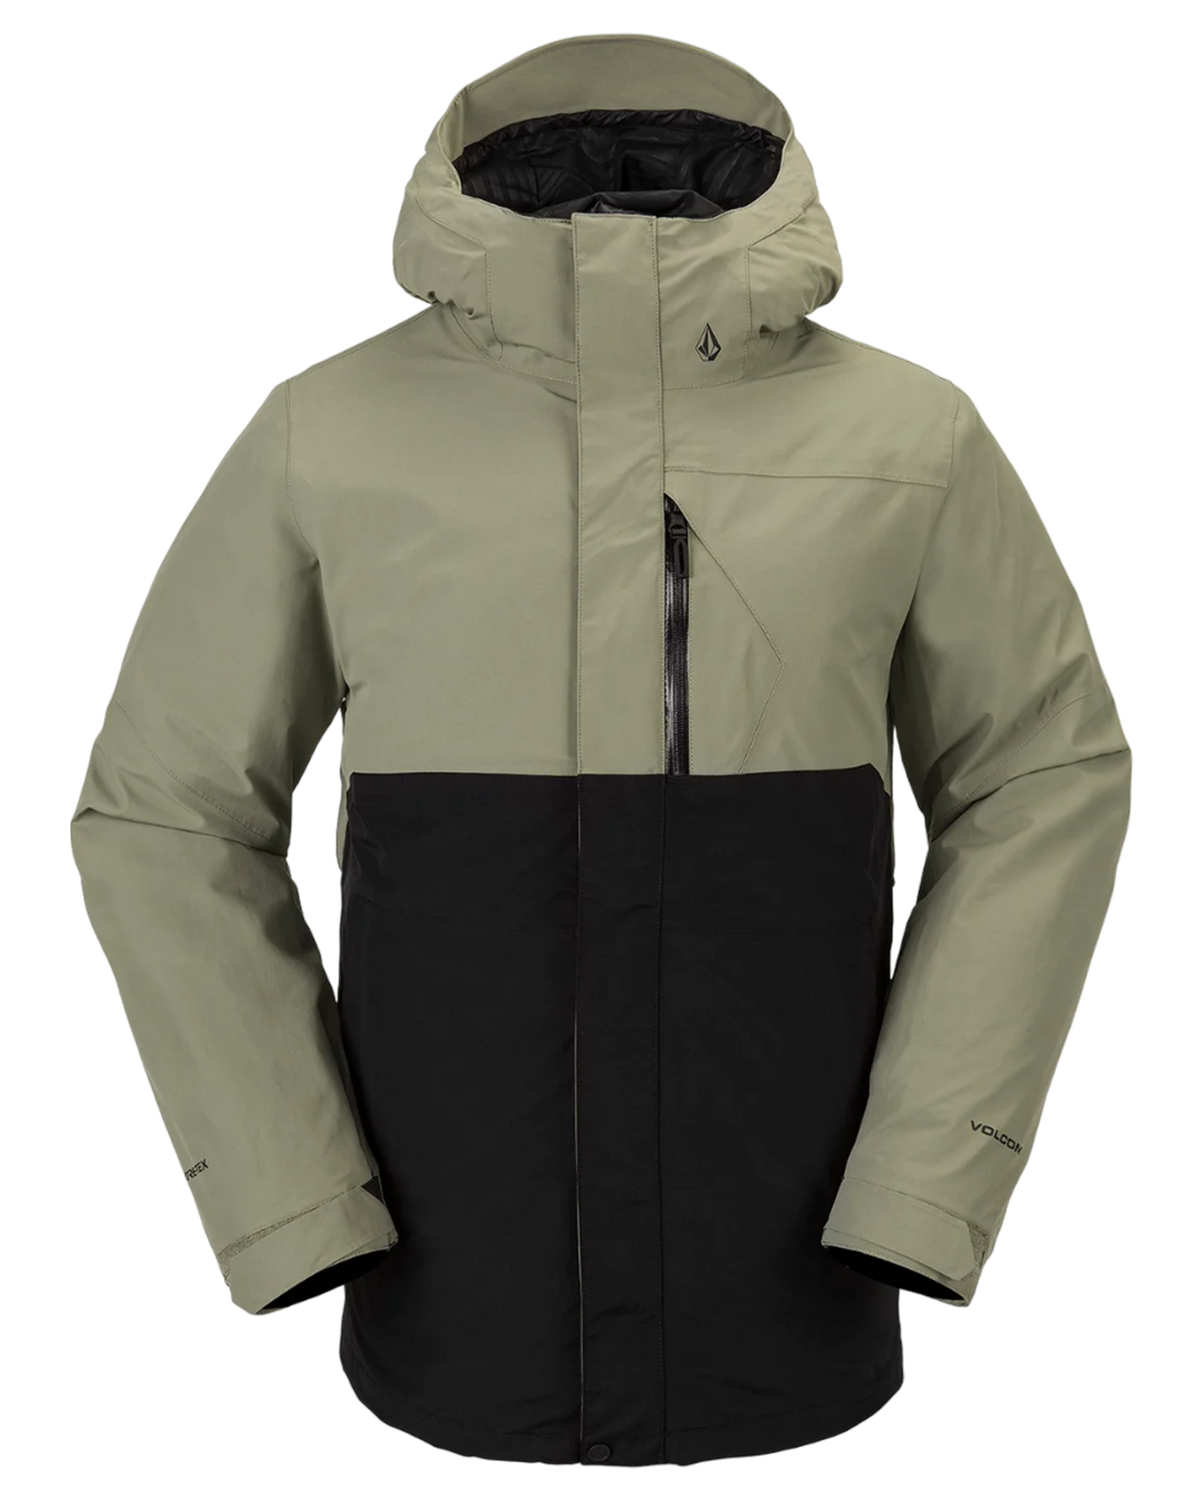 Volcom L Gore-Tex Jacket - Light Military | Shop Coats & Jackets at ...